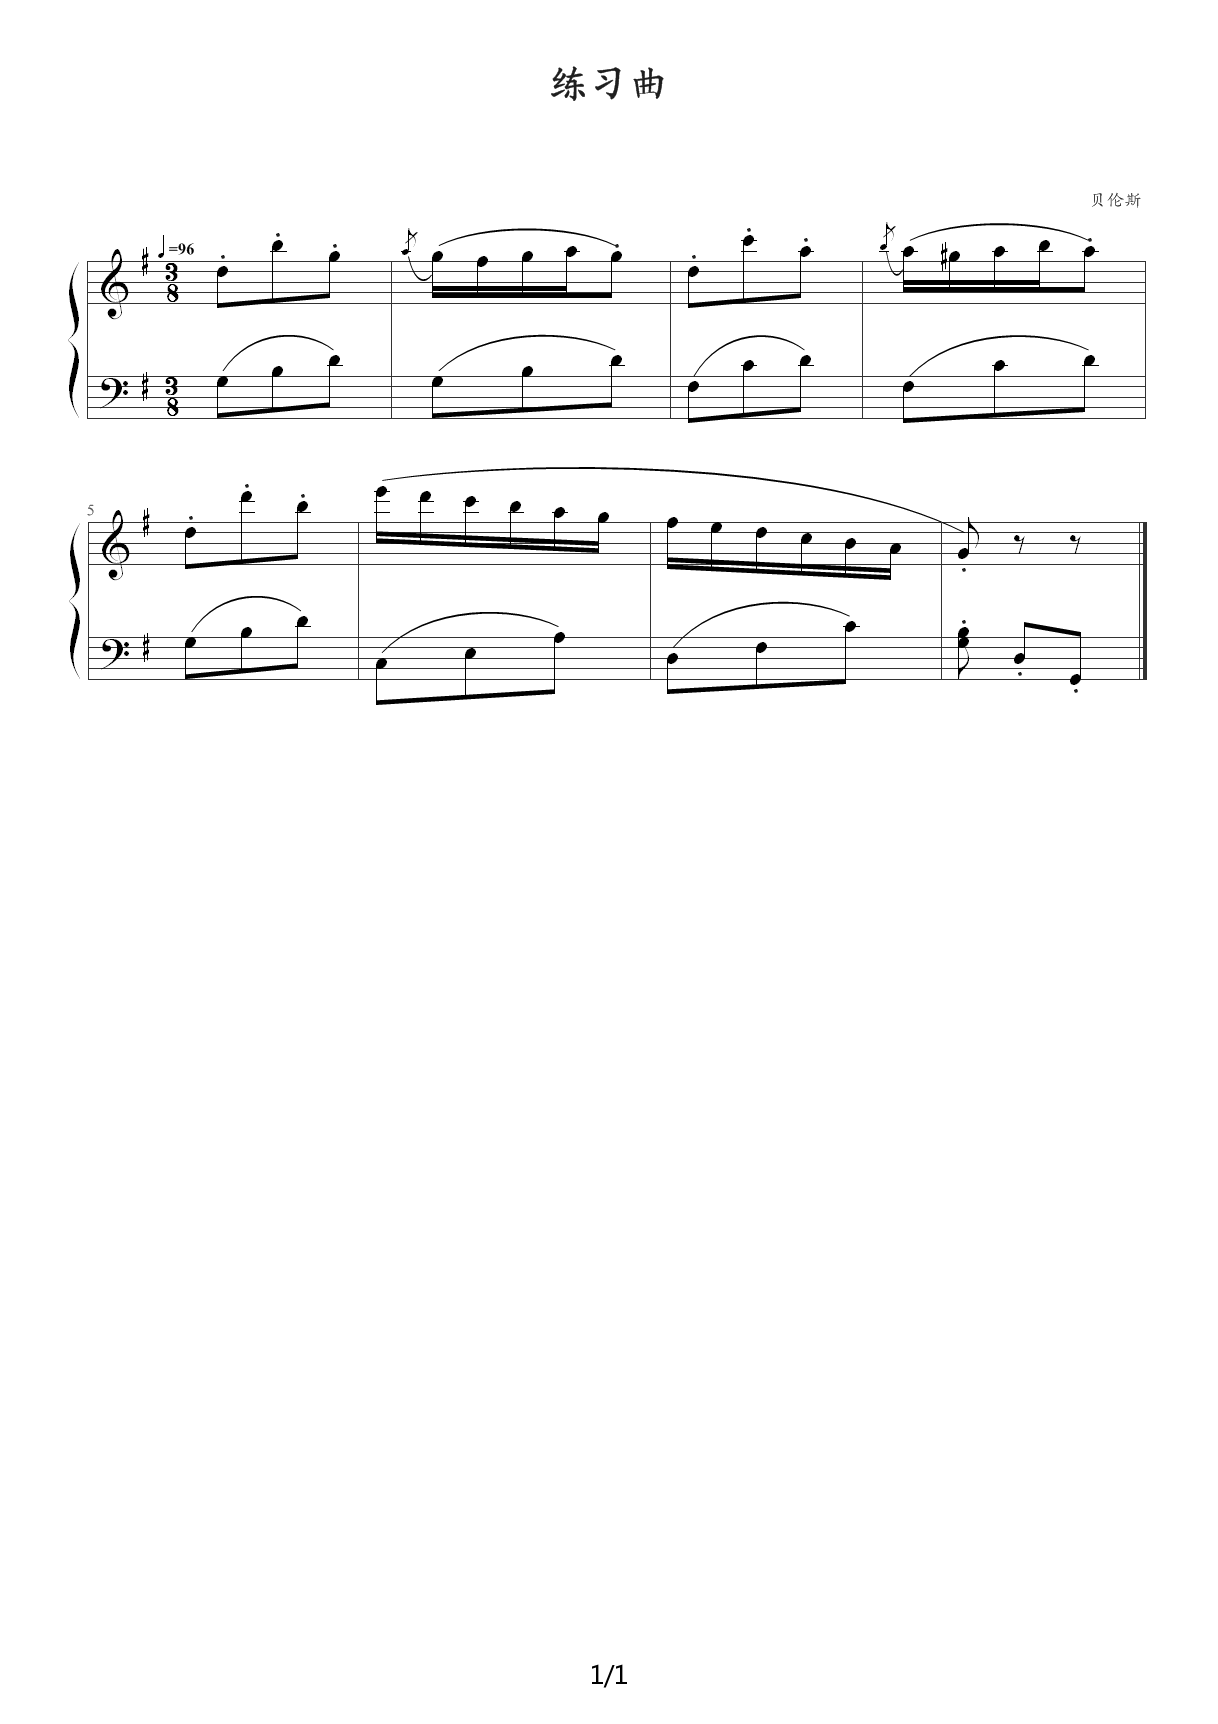 约翰·汤普森现代钢琴教程2（大汤2）_35练习曲 G调